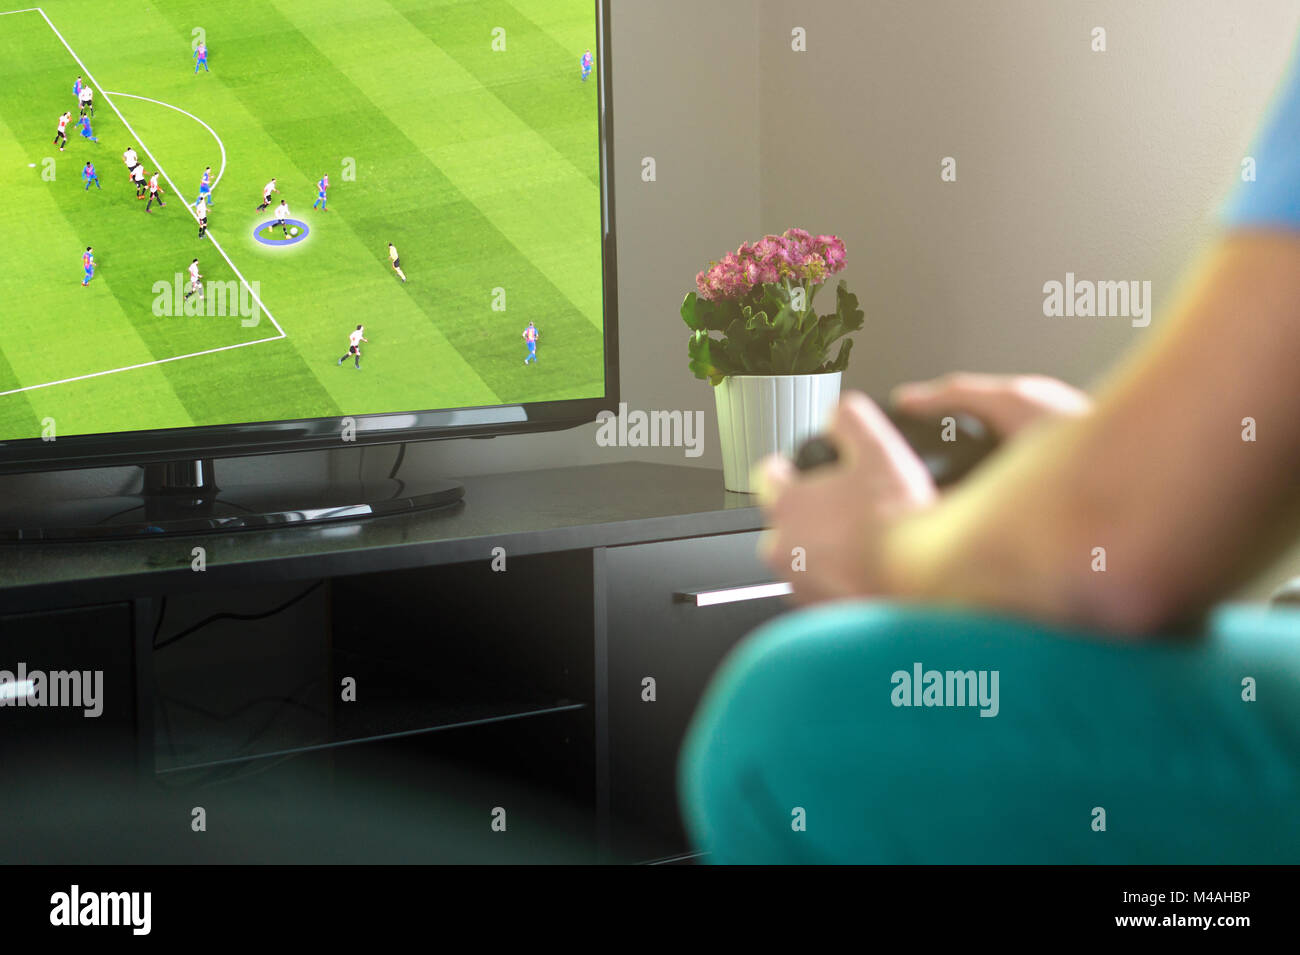 El hombre imaginario jugando fútbol o consola de juego de fútbol en la televisión en casa. Celebración gamepad en la mano. Freetime divertida actividad. Foto de stock